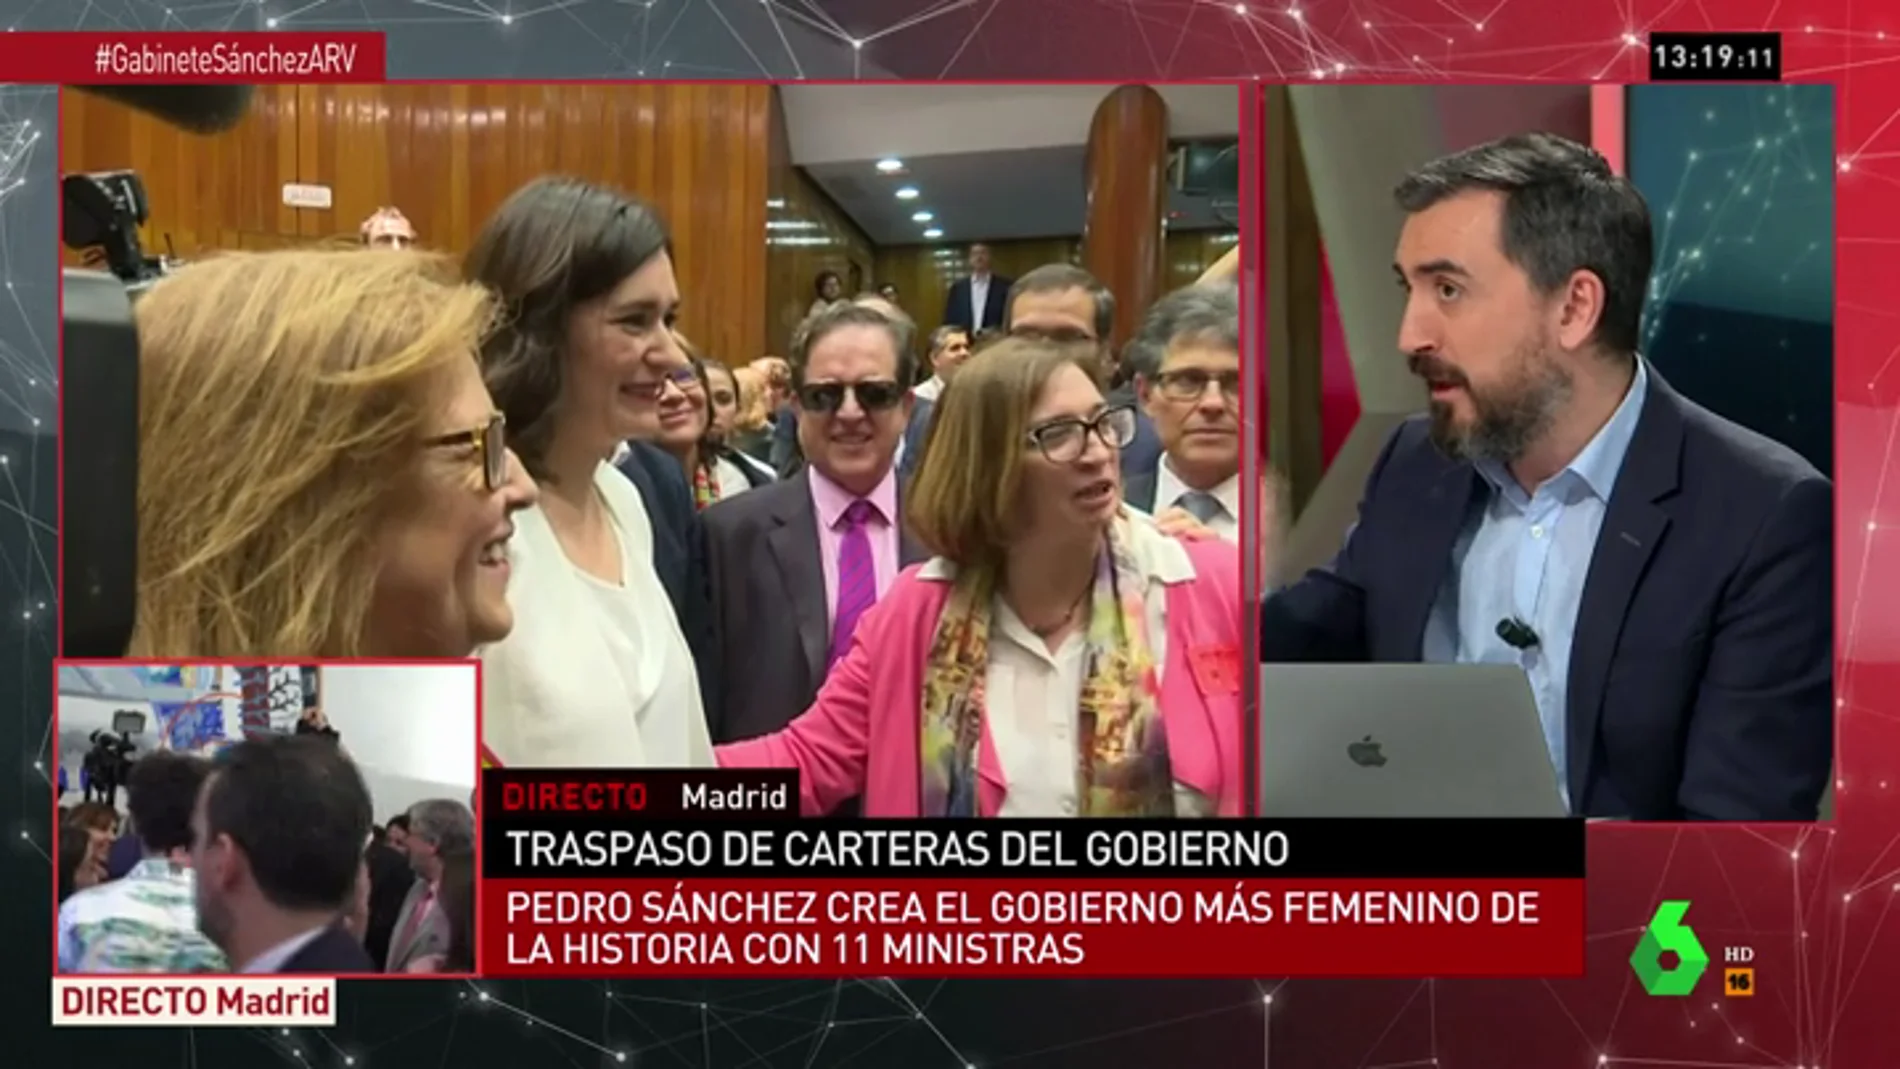 <p>Ignacio Escolar: "No es un Gobierno para un ratito. Sánchez ha hecho un enorme cartel electoral para ganar las elecciones"</p>